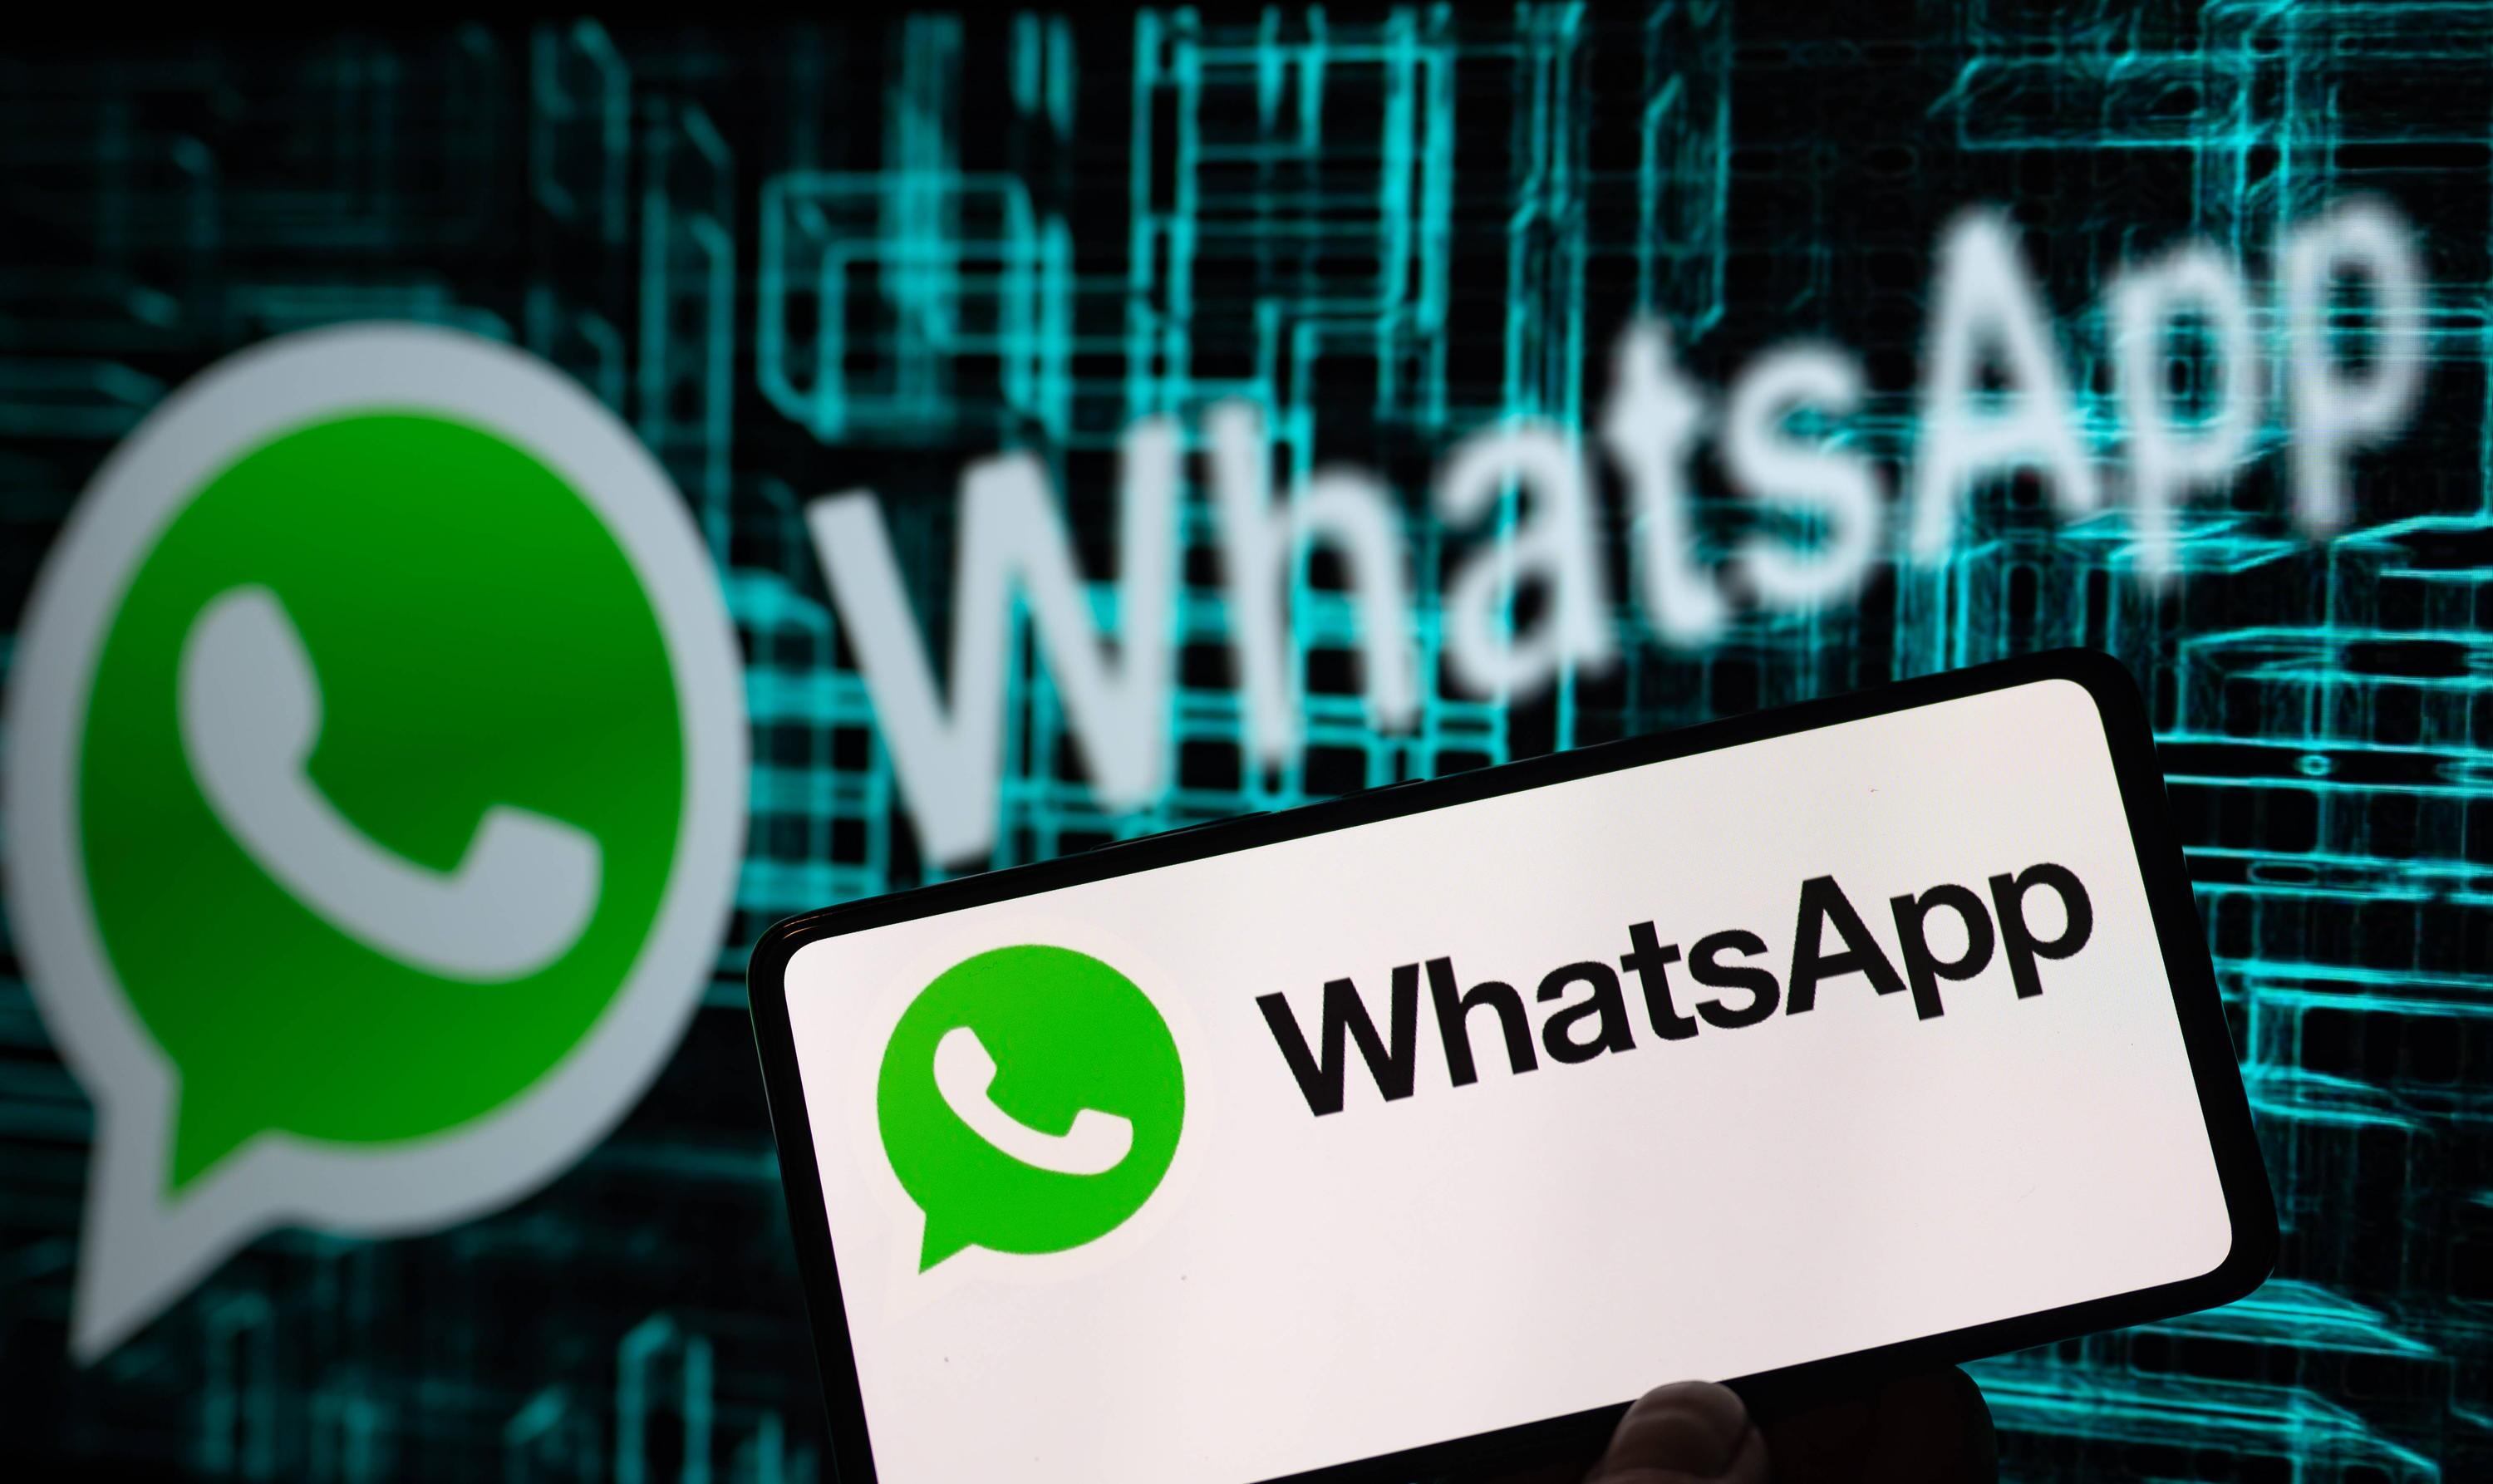 WhatsApp Client Development Software